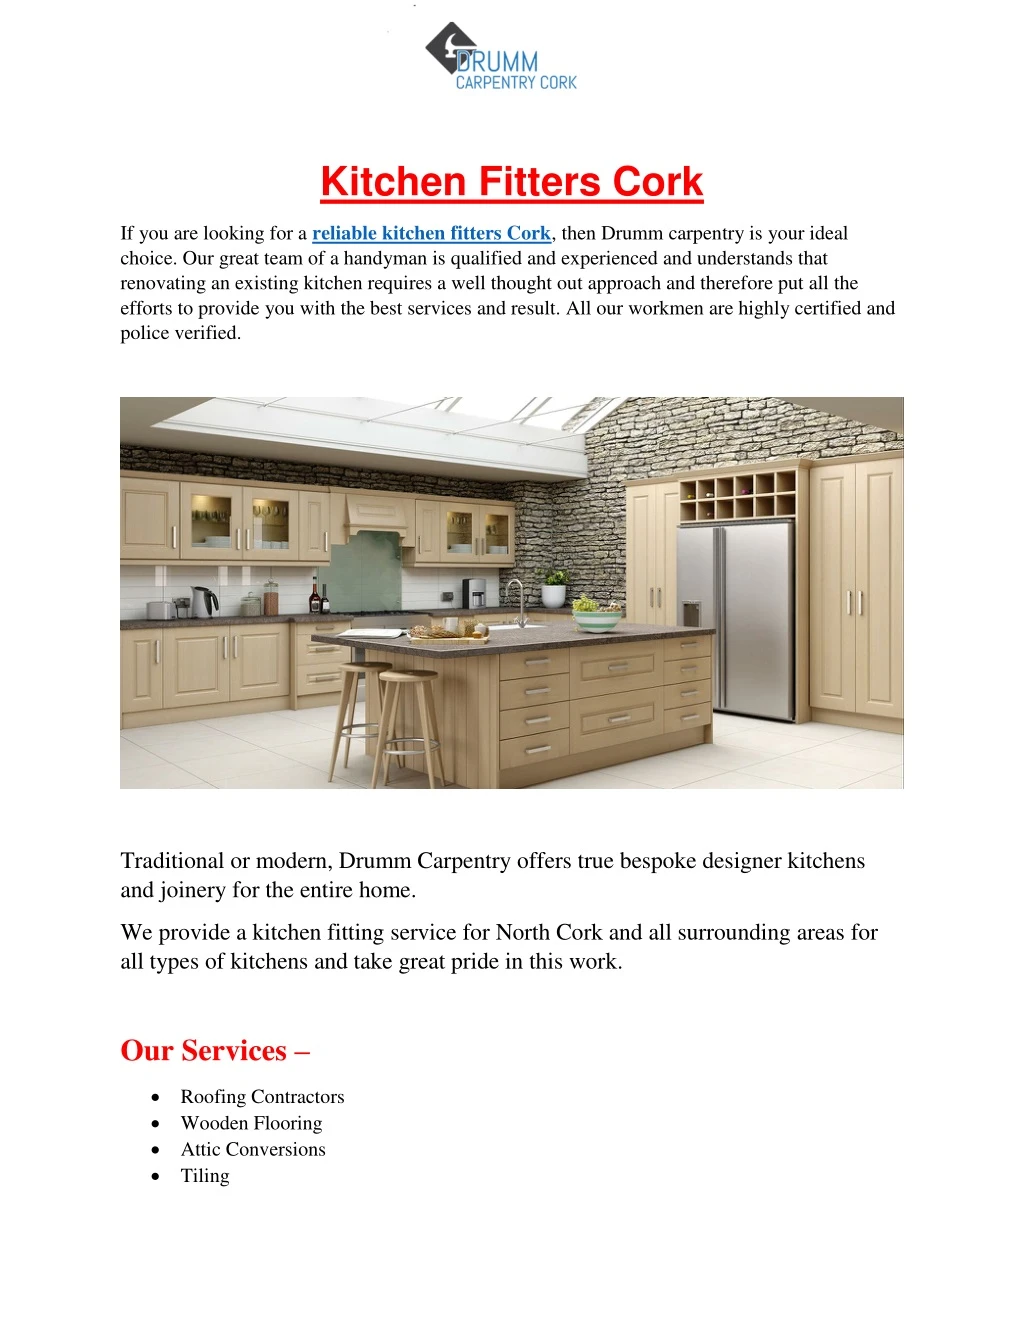 kitchen fitters cork